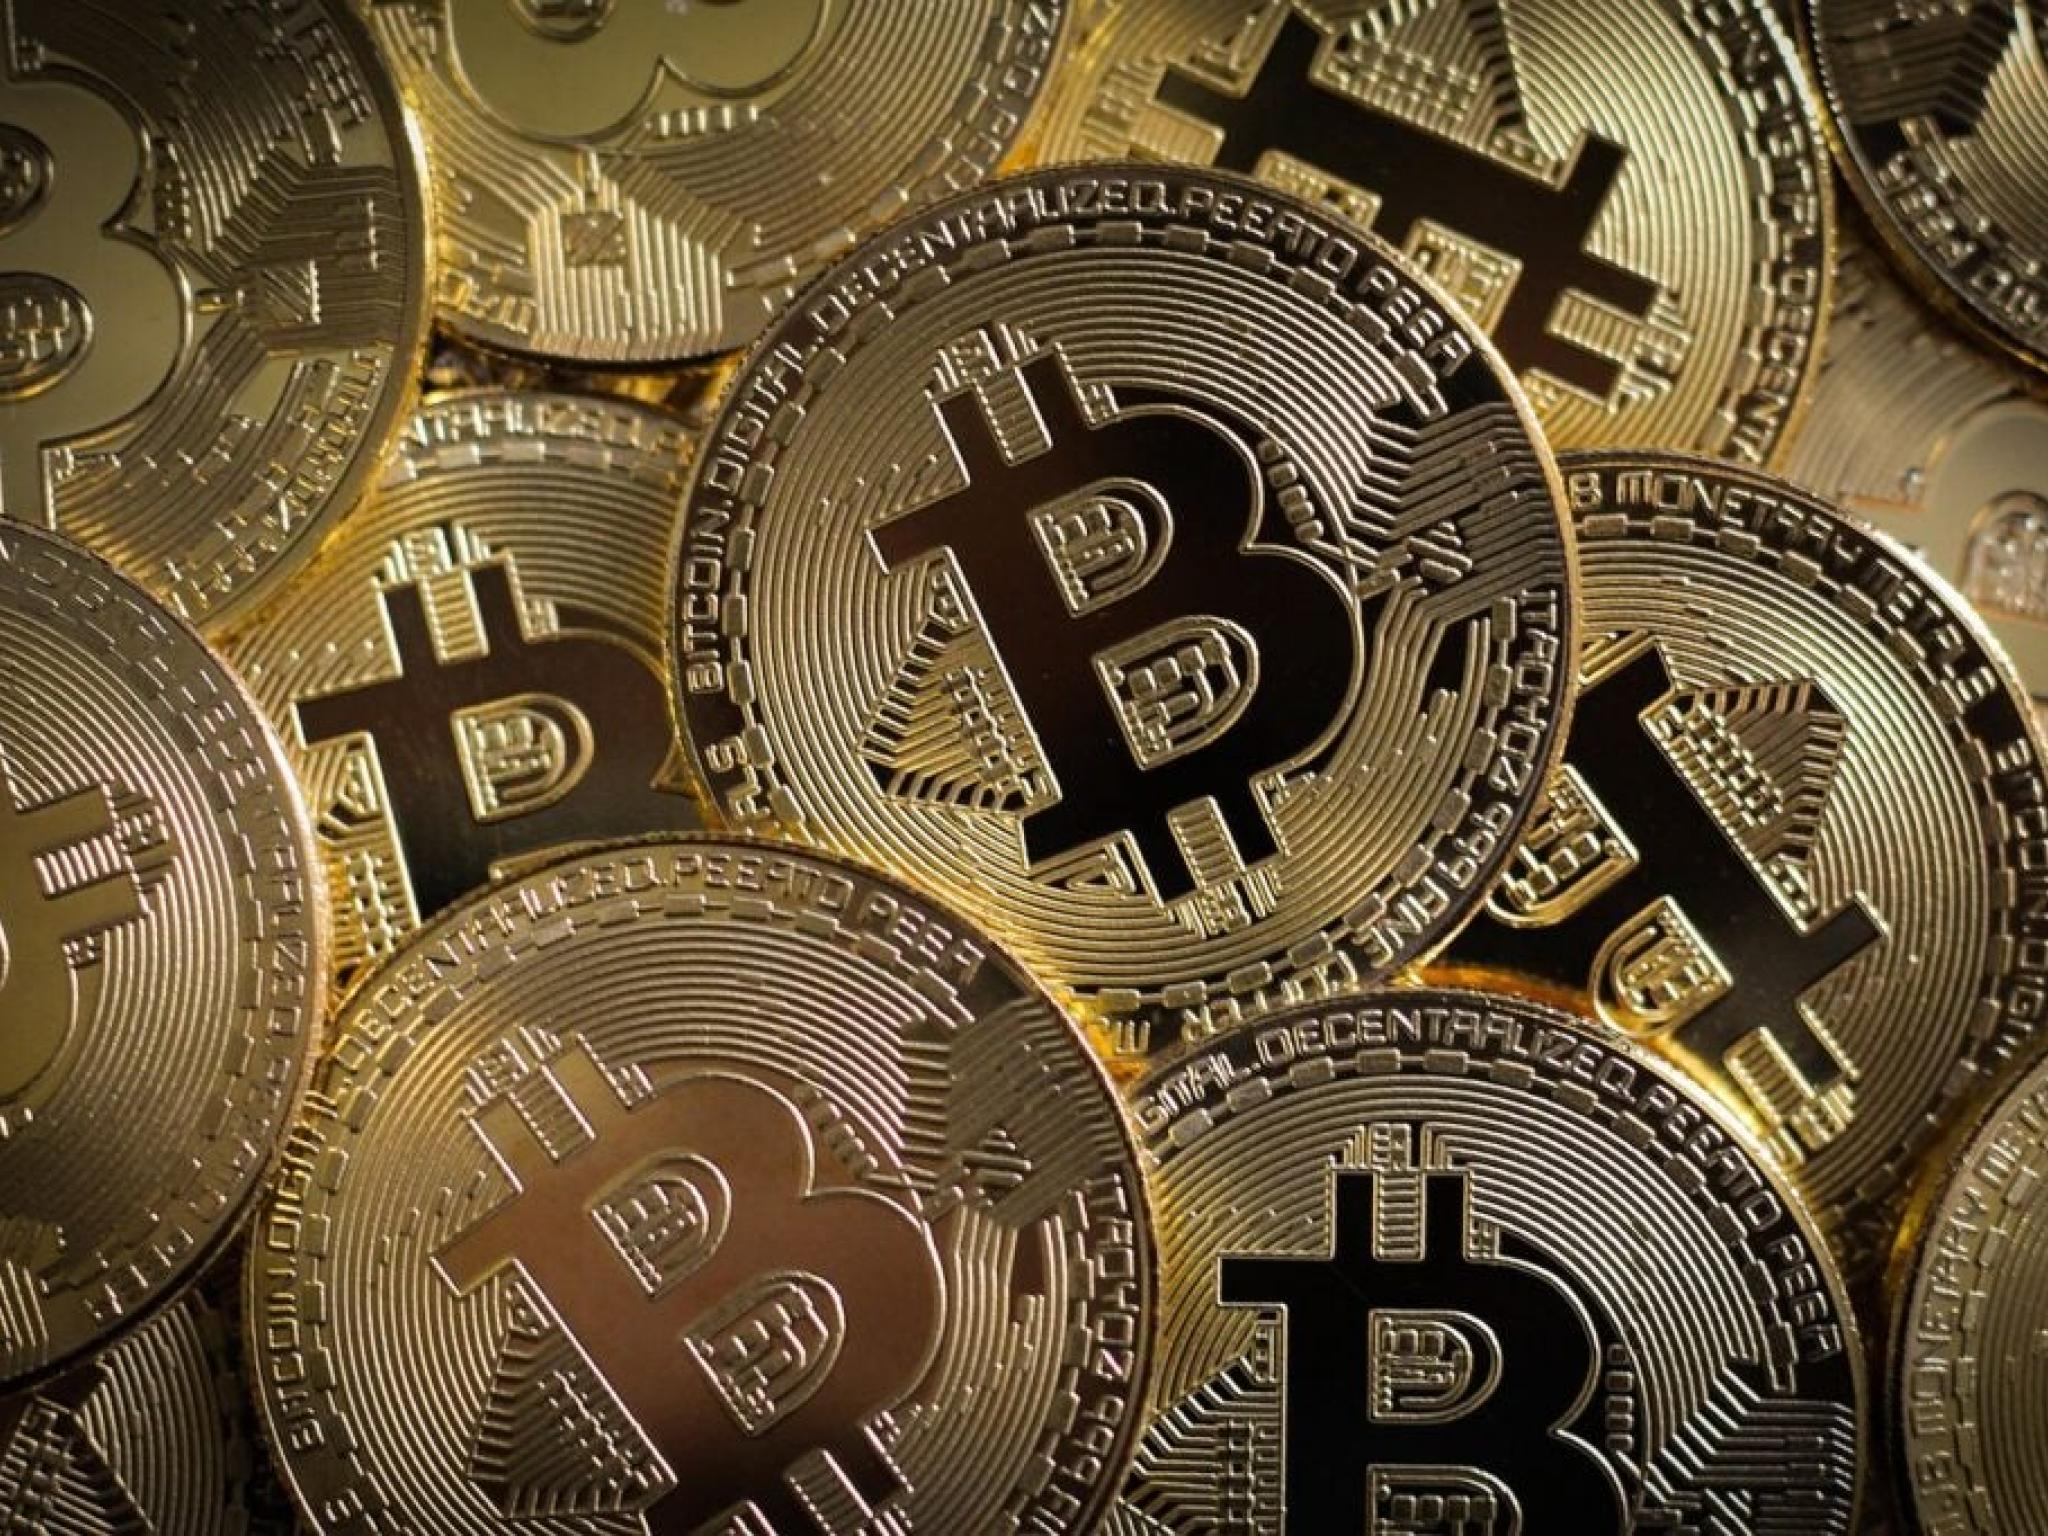  bitcoin-to-peak-at-150k-crypto-etf-market-to-grow-to-450b-bernstein 